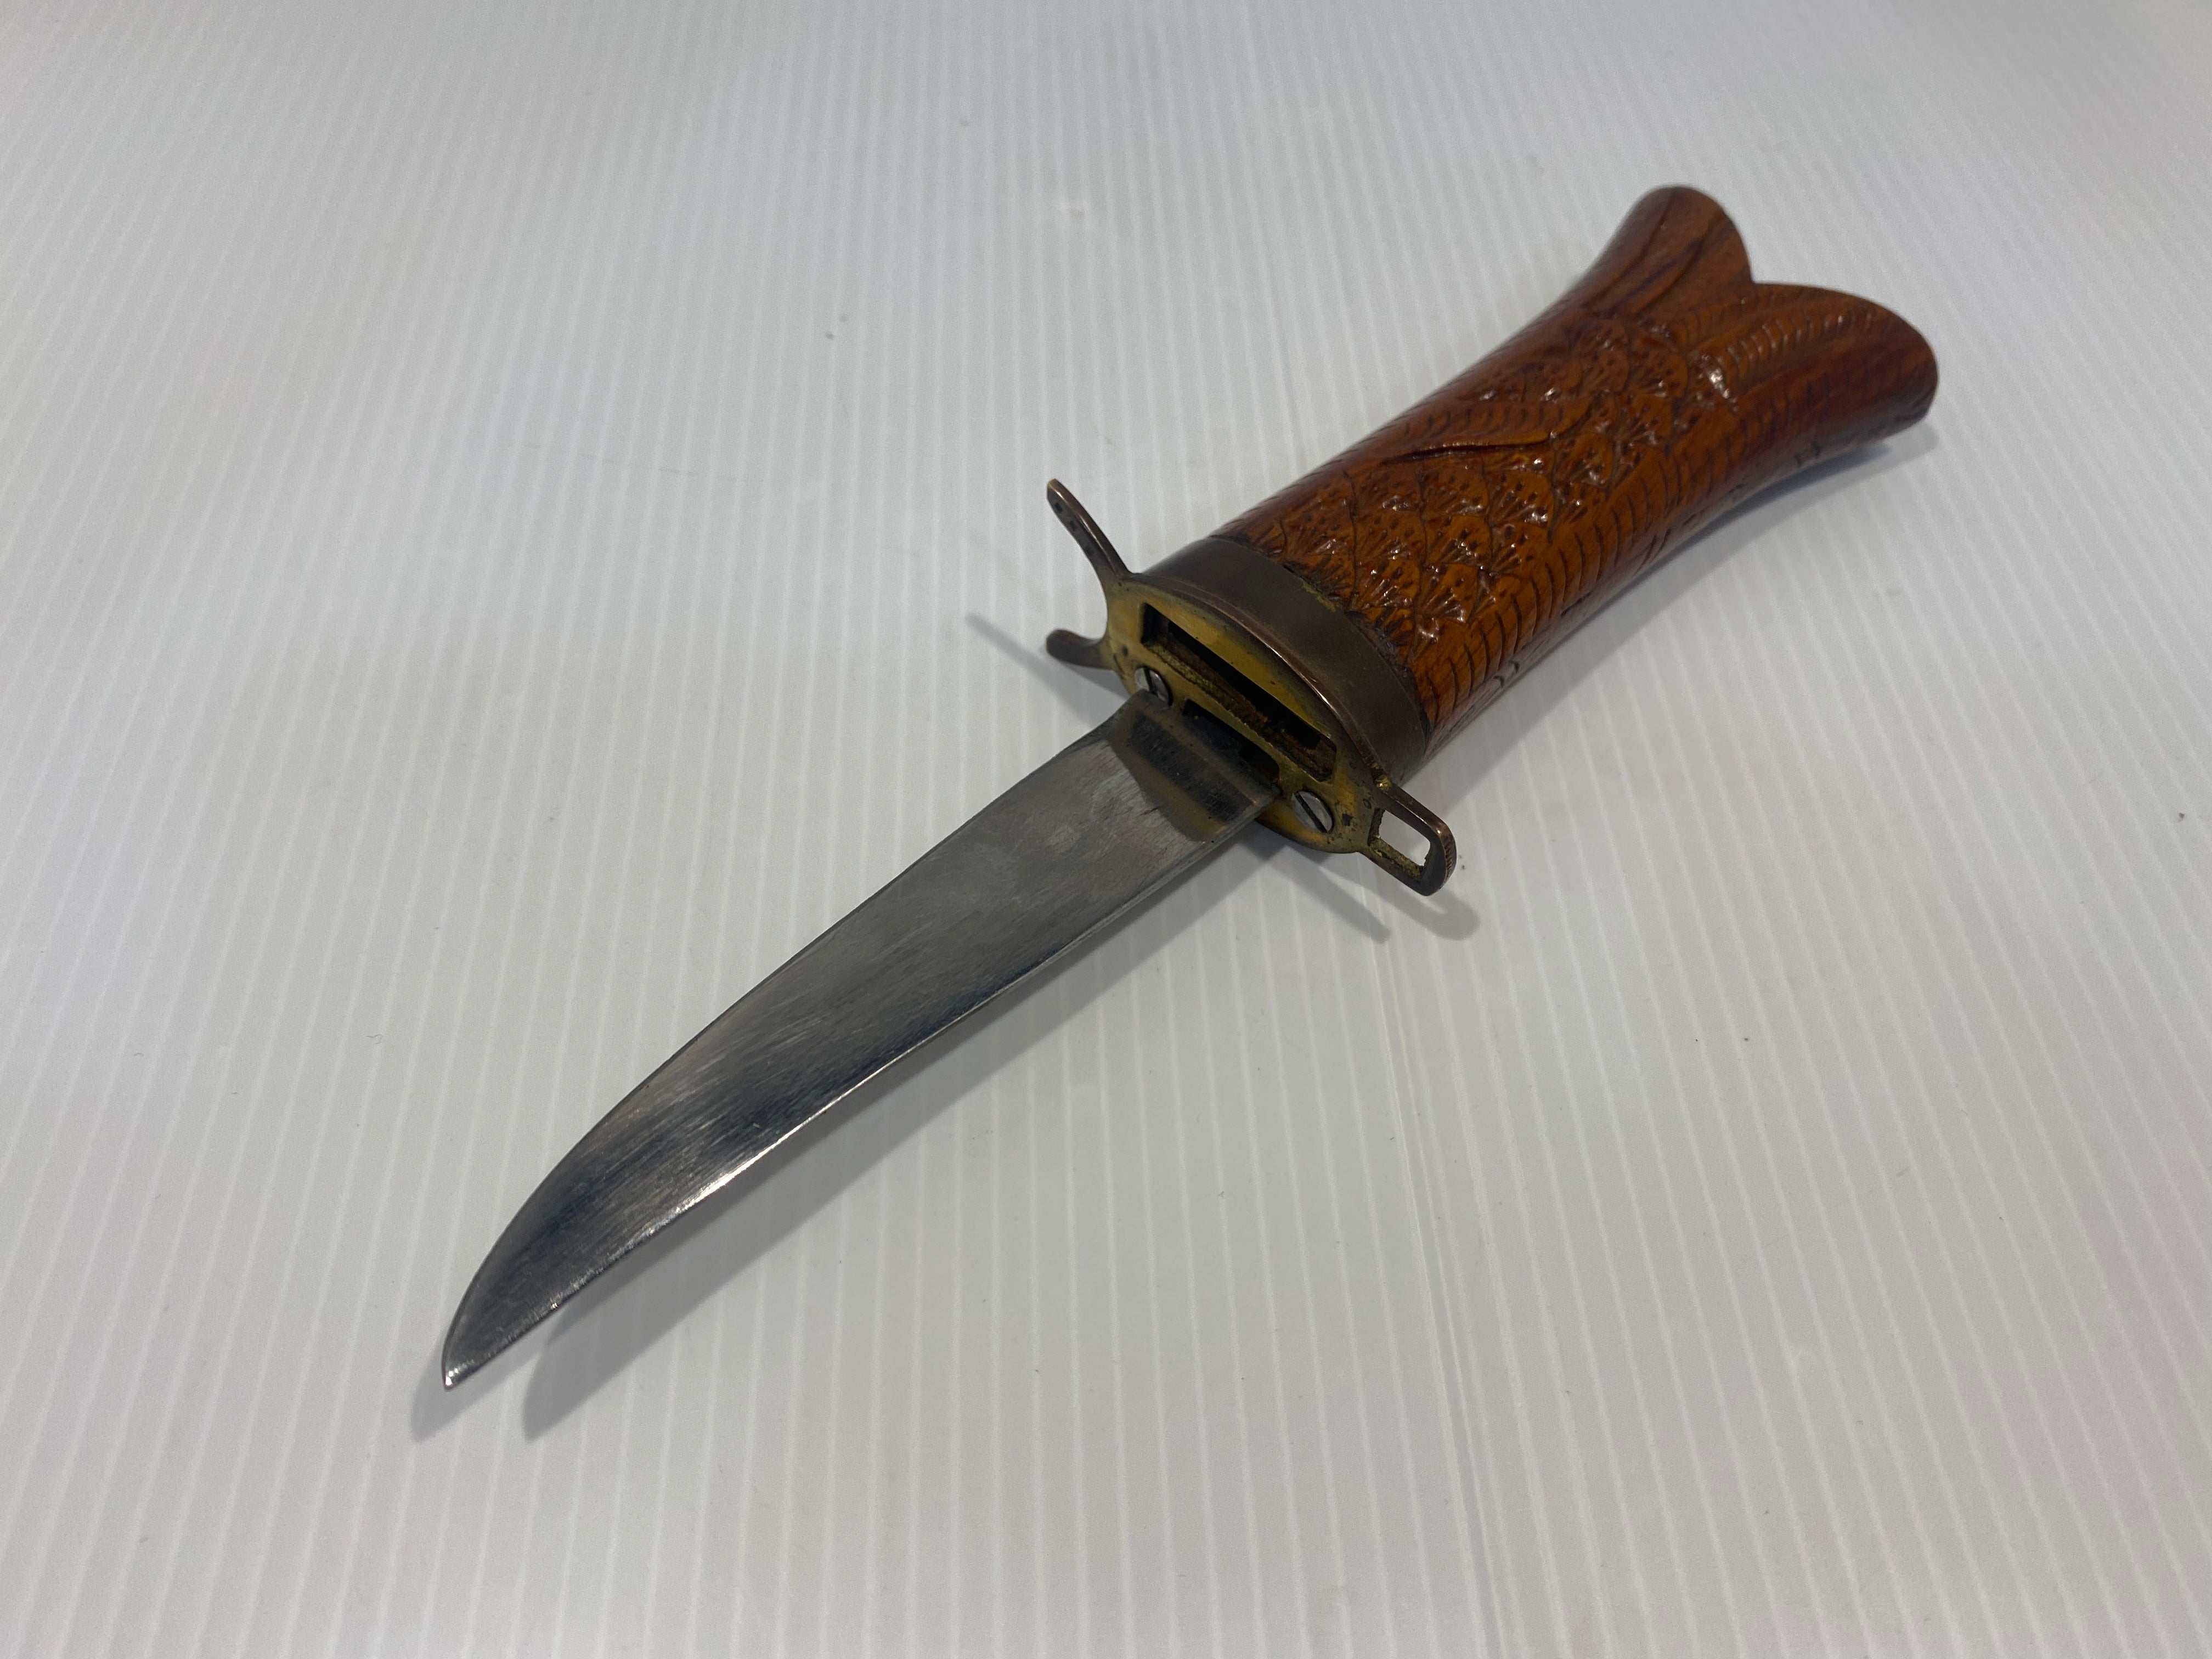 Vintage Wood Knife and Fork Set